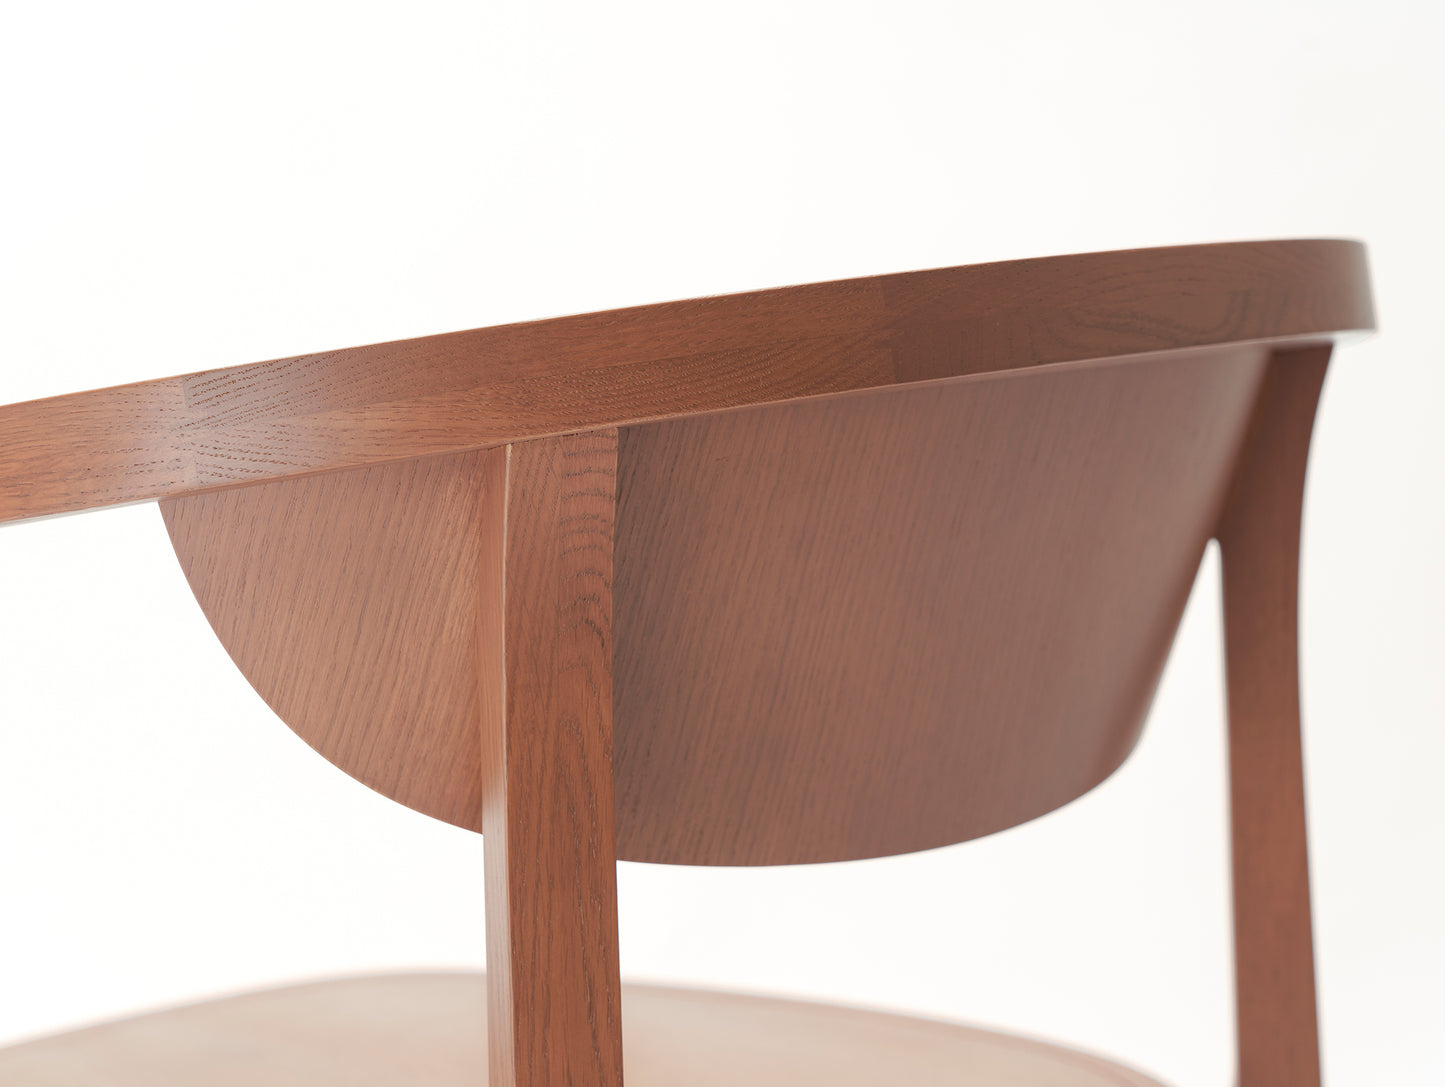 Chesa Chair by Karimoku New Standard - Terracotta 